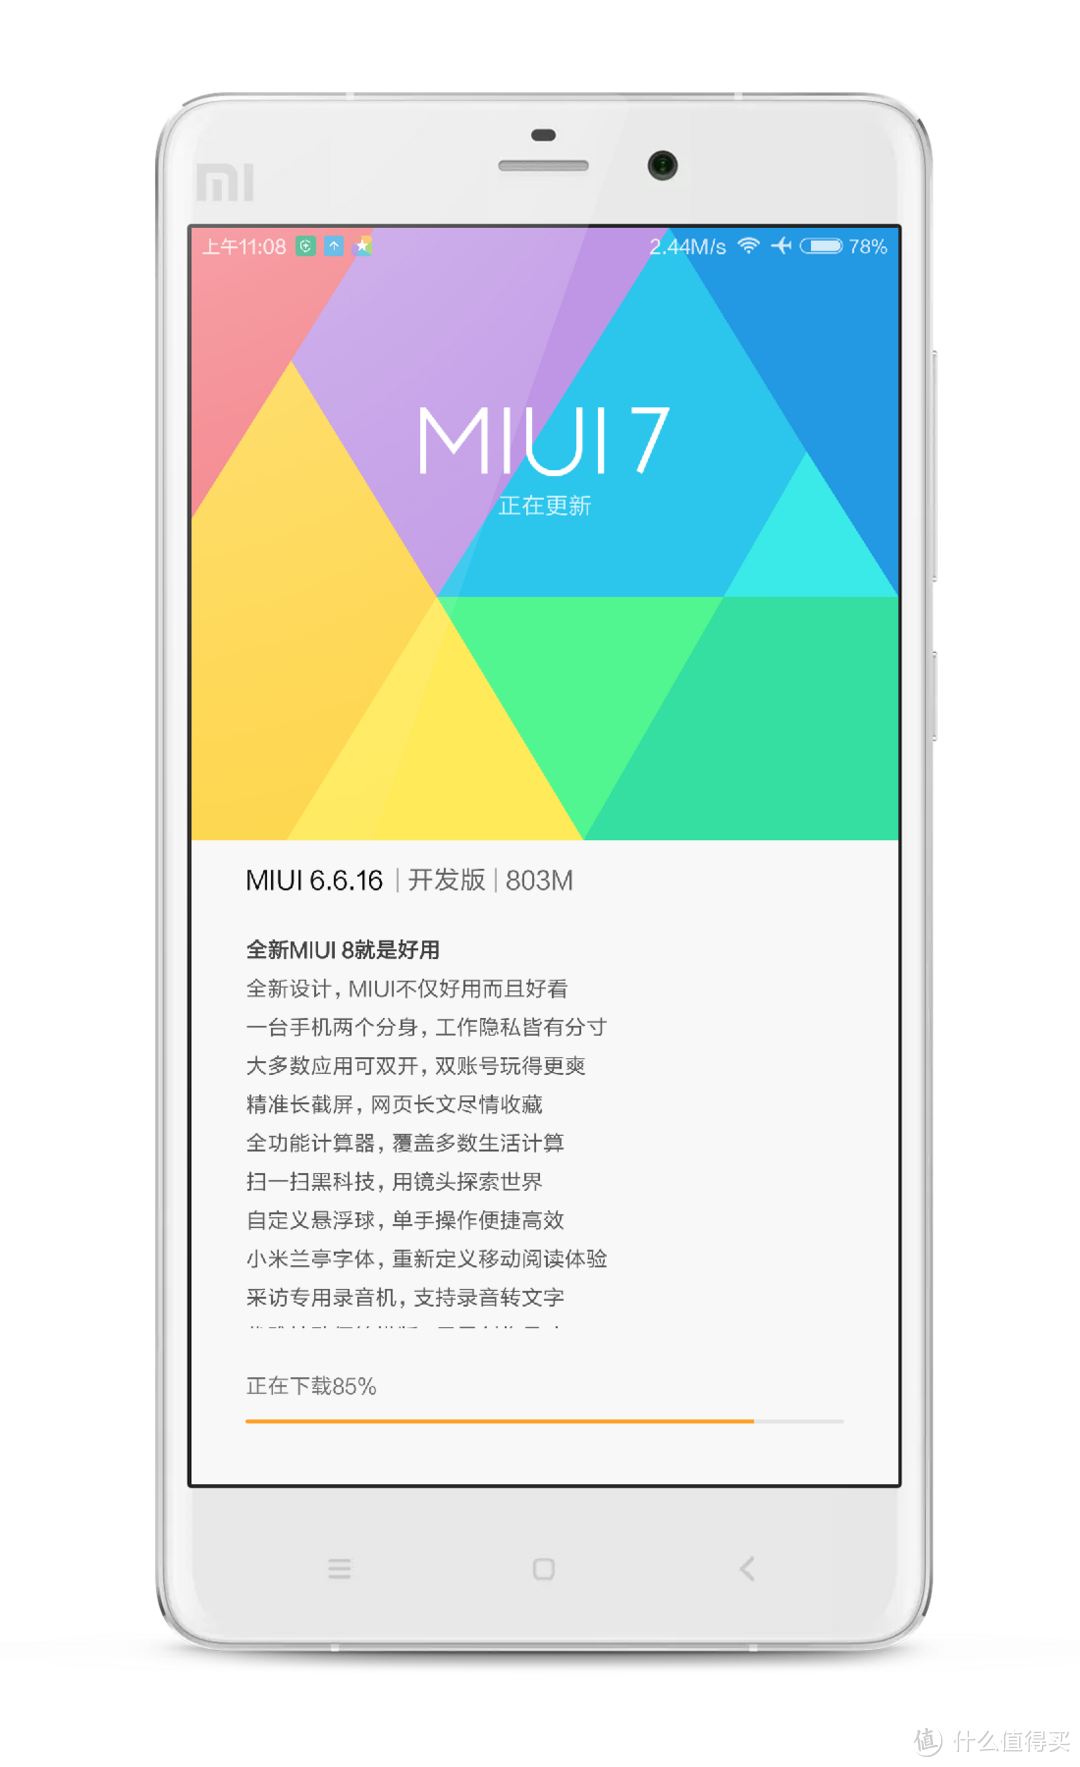 全新的界面系统— MIUI8 体验